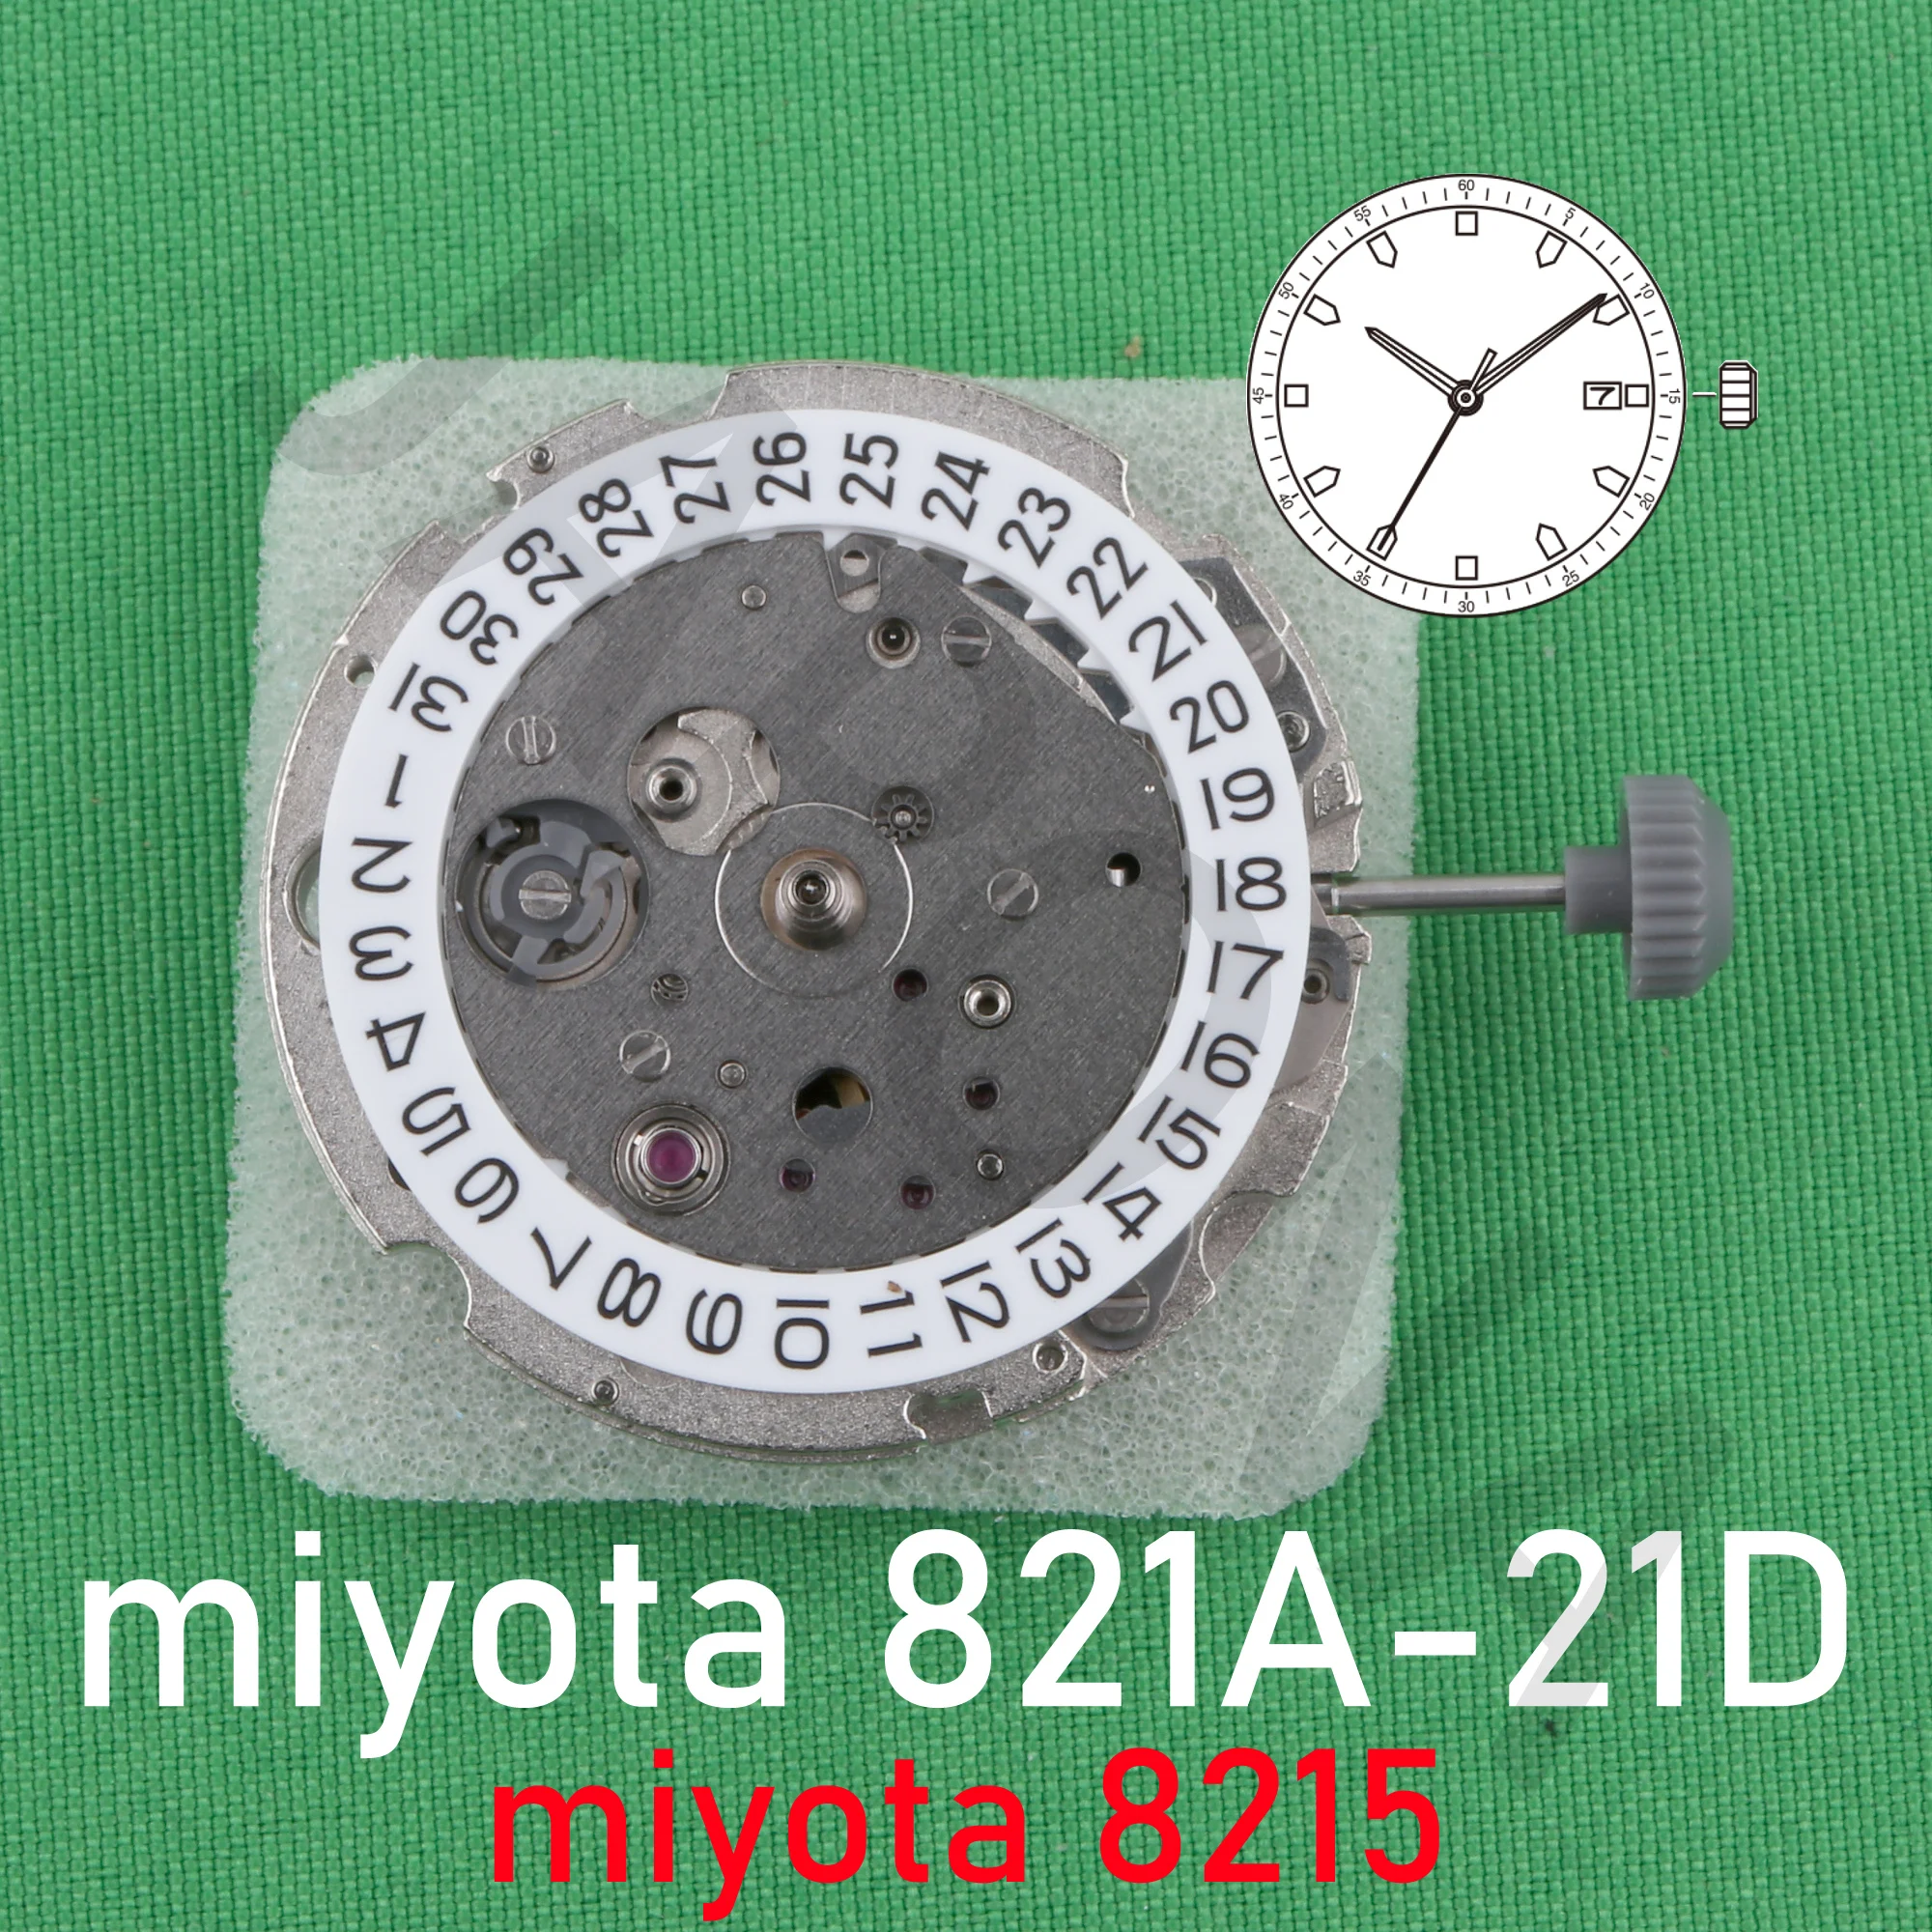 механизм 8215 miyota 821a-21d Фирменный стандартный механический механизм MIYOTA с 3 стрелками и датой в 3 °c 8215 821a 821